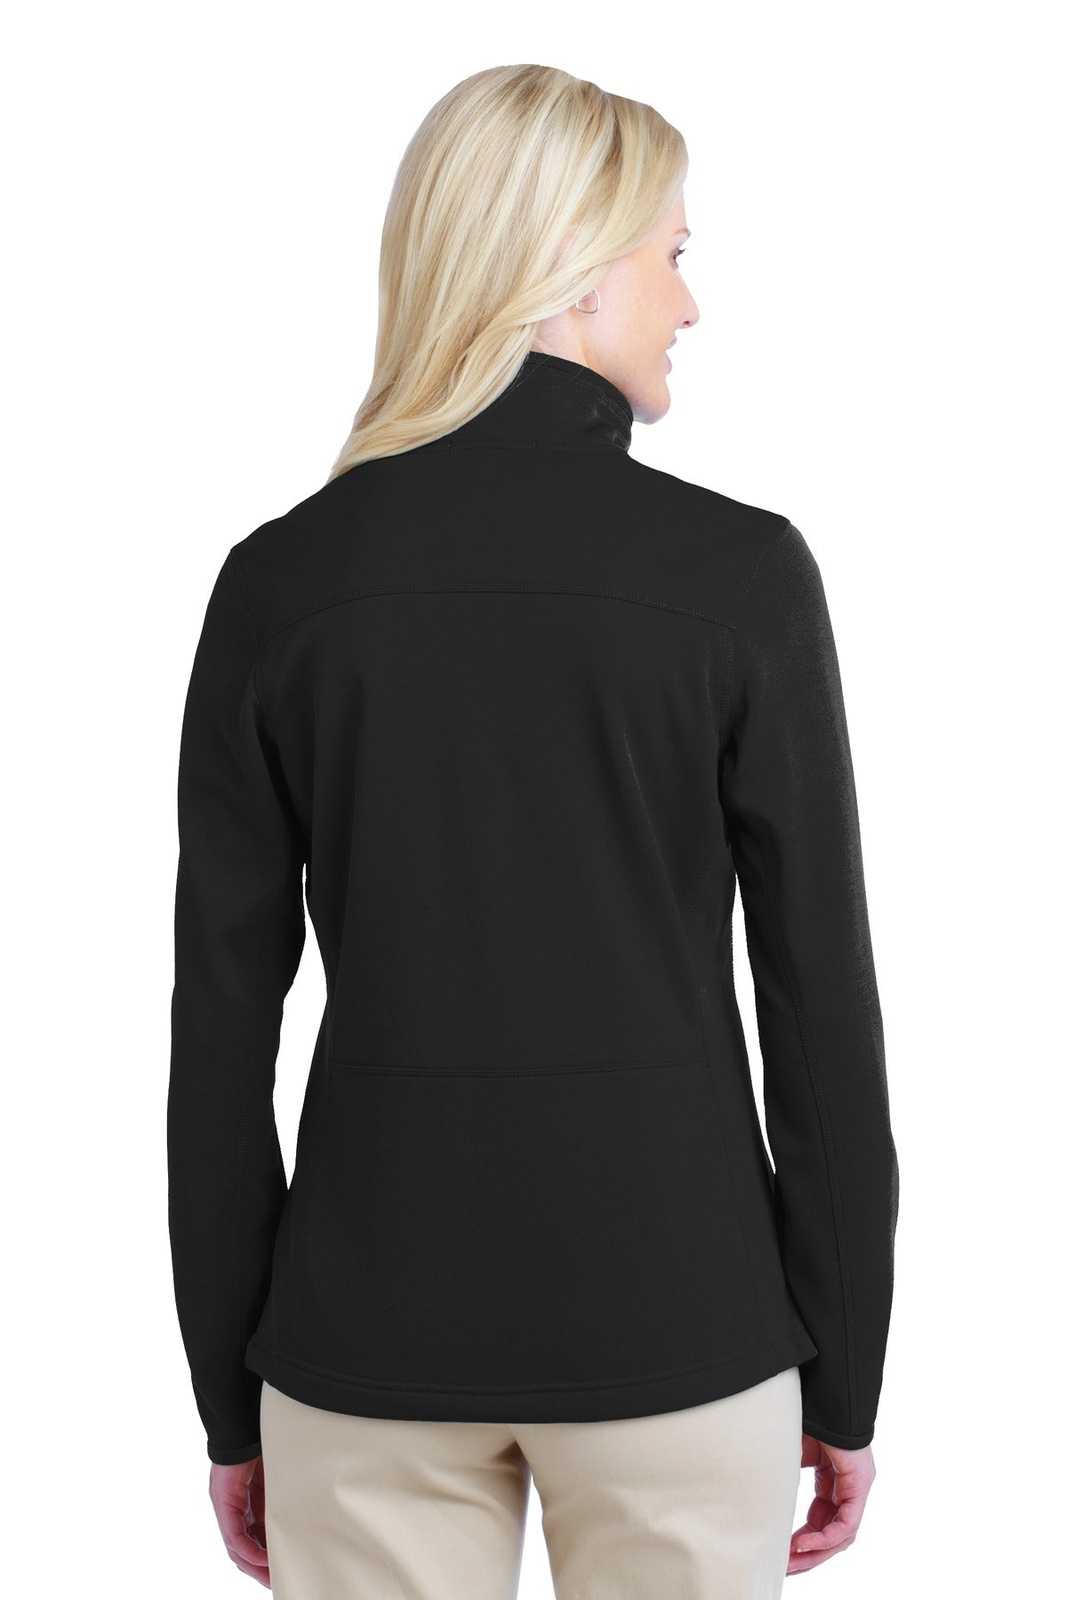 Port Authority L222 Ladies Pique Fleece Jacket - Black - HIT a Double - 2